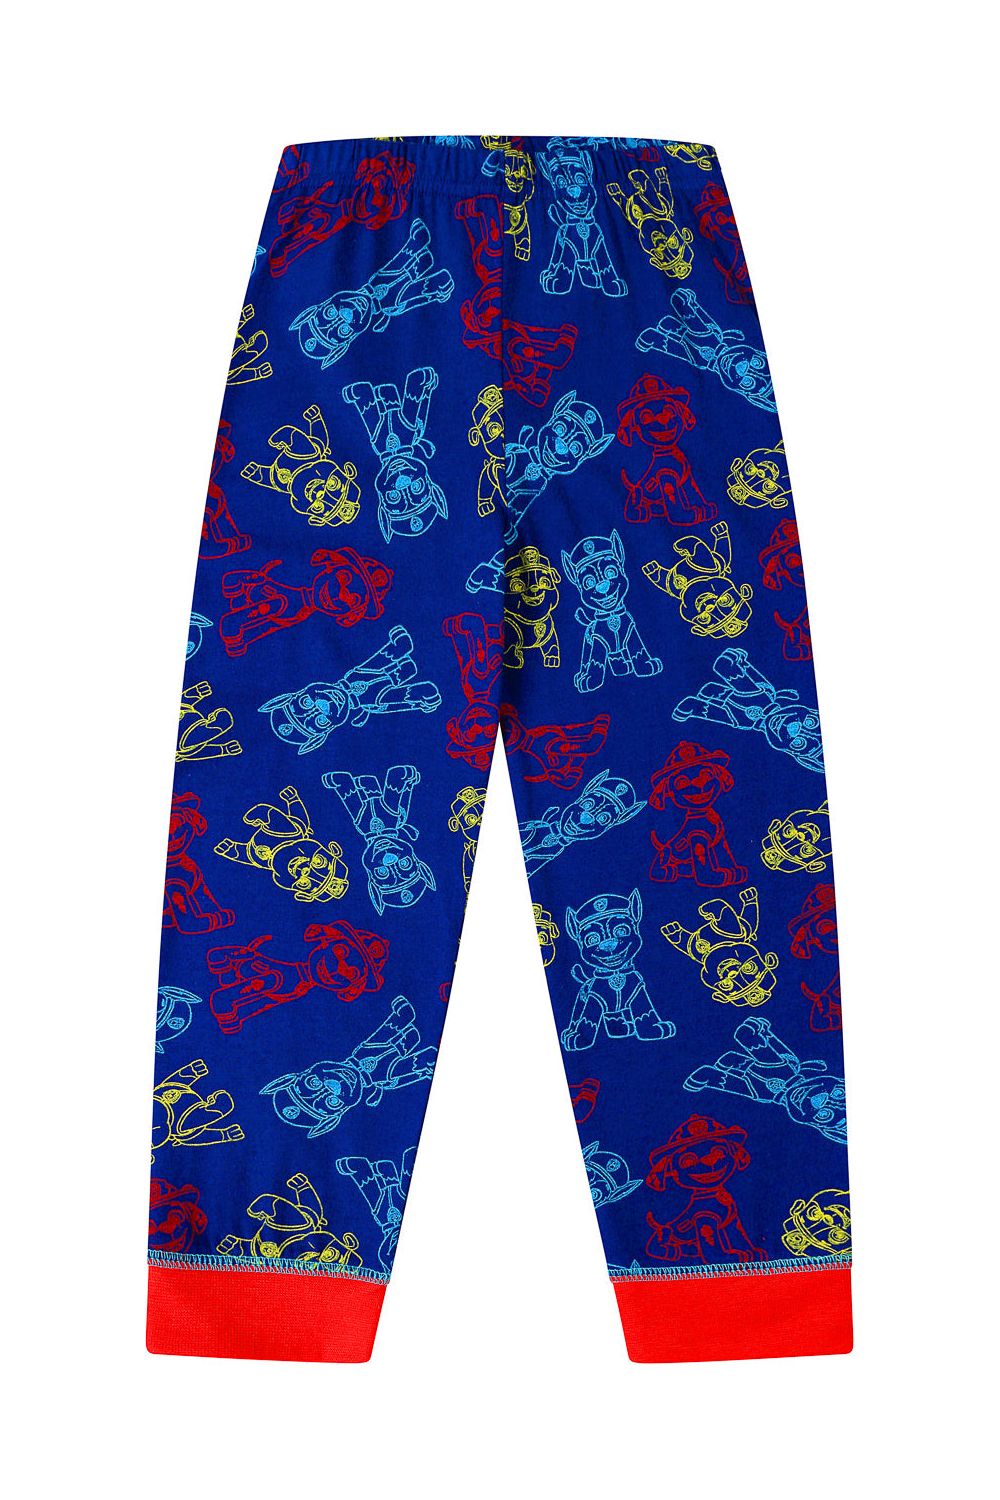 Boys Paw Patrol Long Red Blue Pyjamas - Pyjamas.com